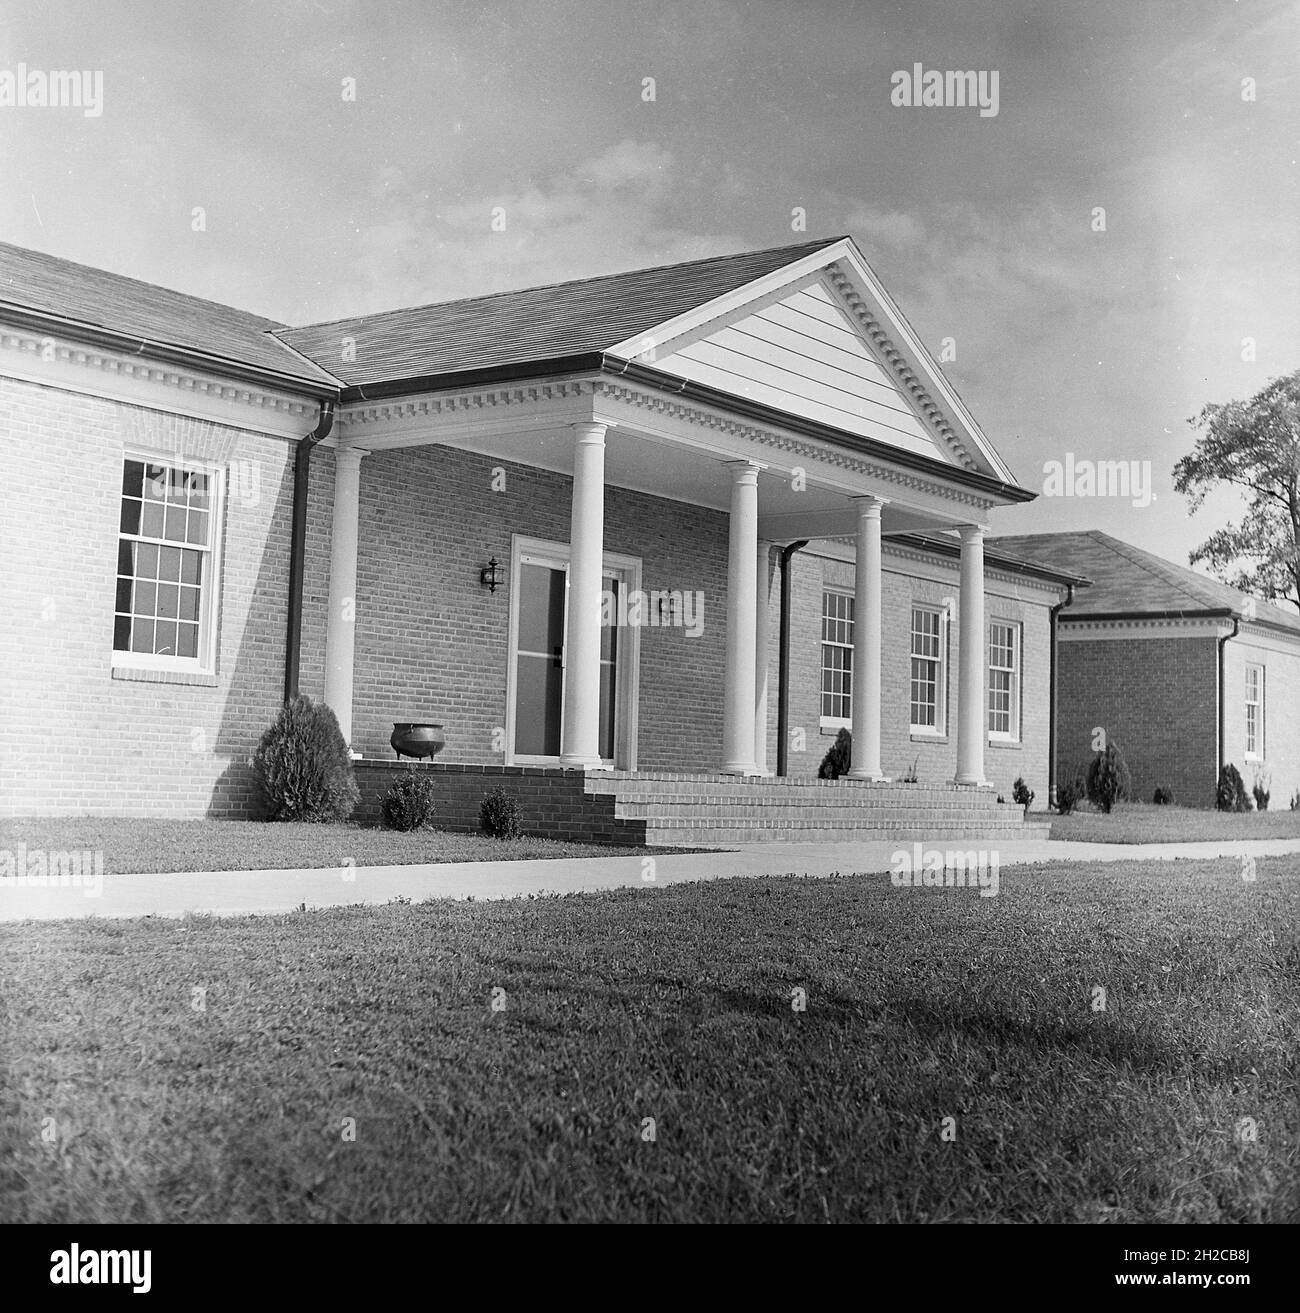 1967, vue historique et extérieure d'une entrée couverte avec colonnes d'un bâtiment d'un étage abritant un centre d'affaires à Middletown, Virginie, États-Unis. Banque D'Images